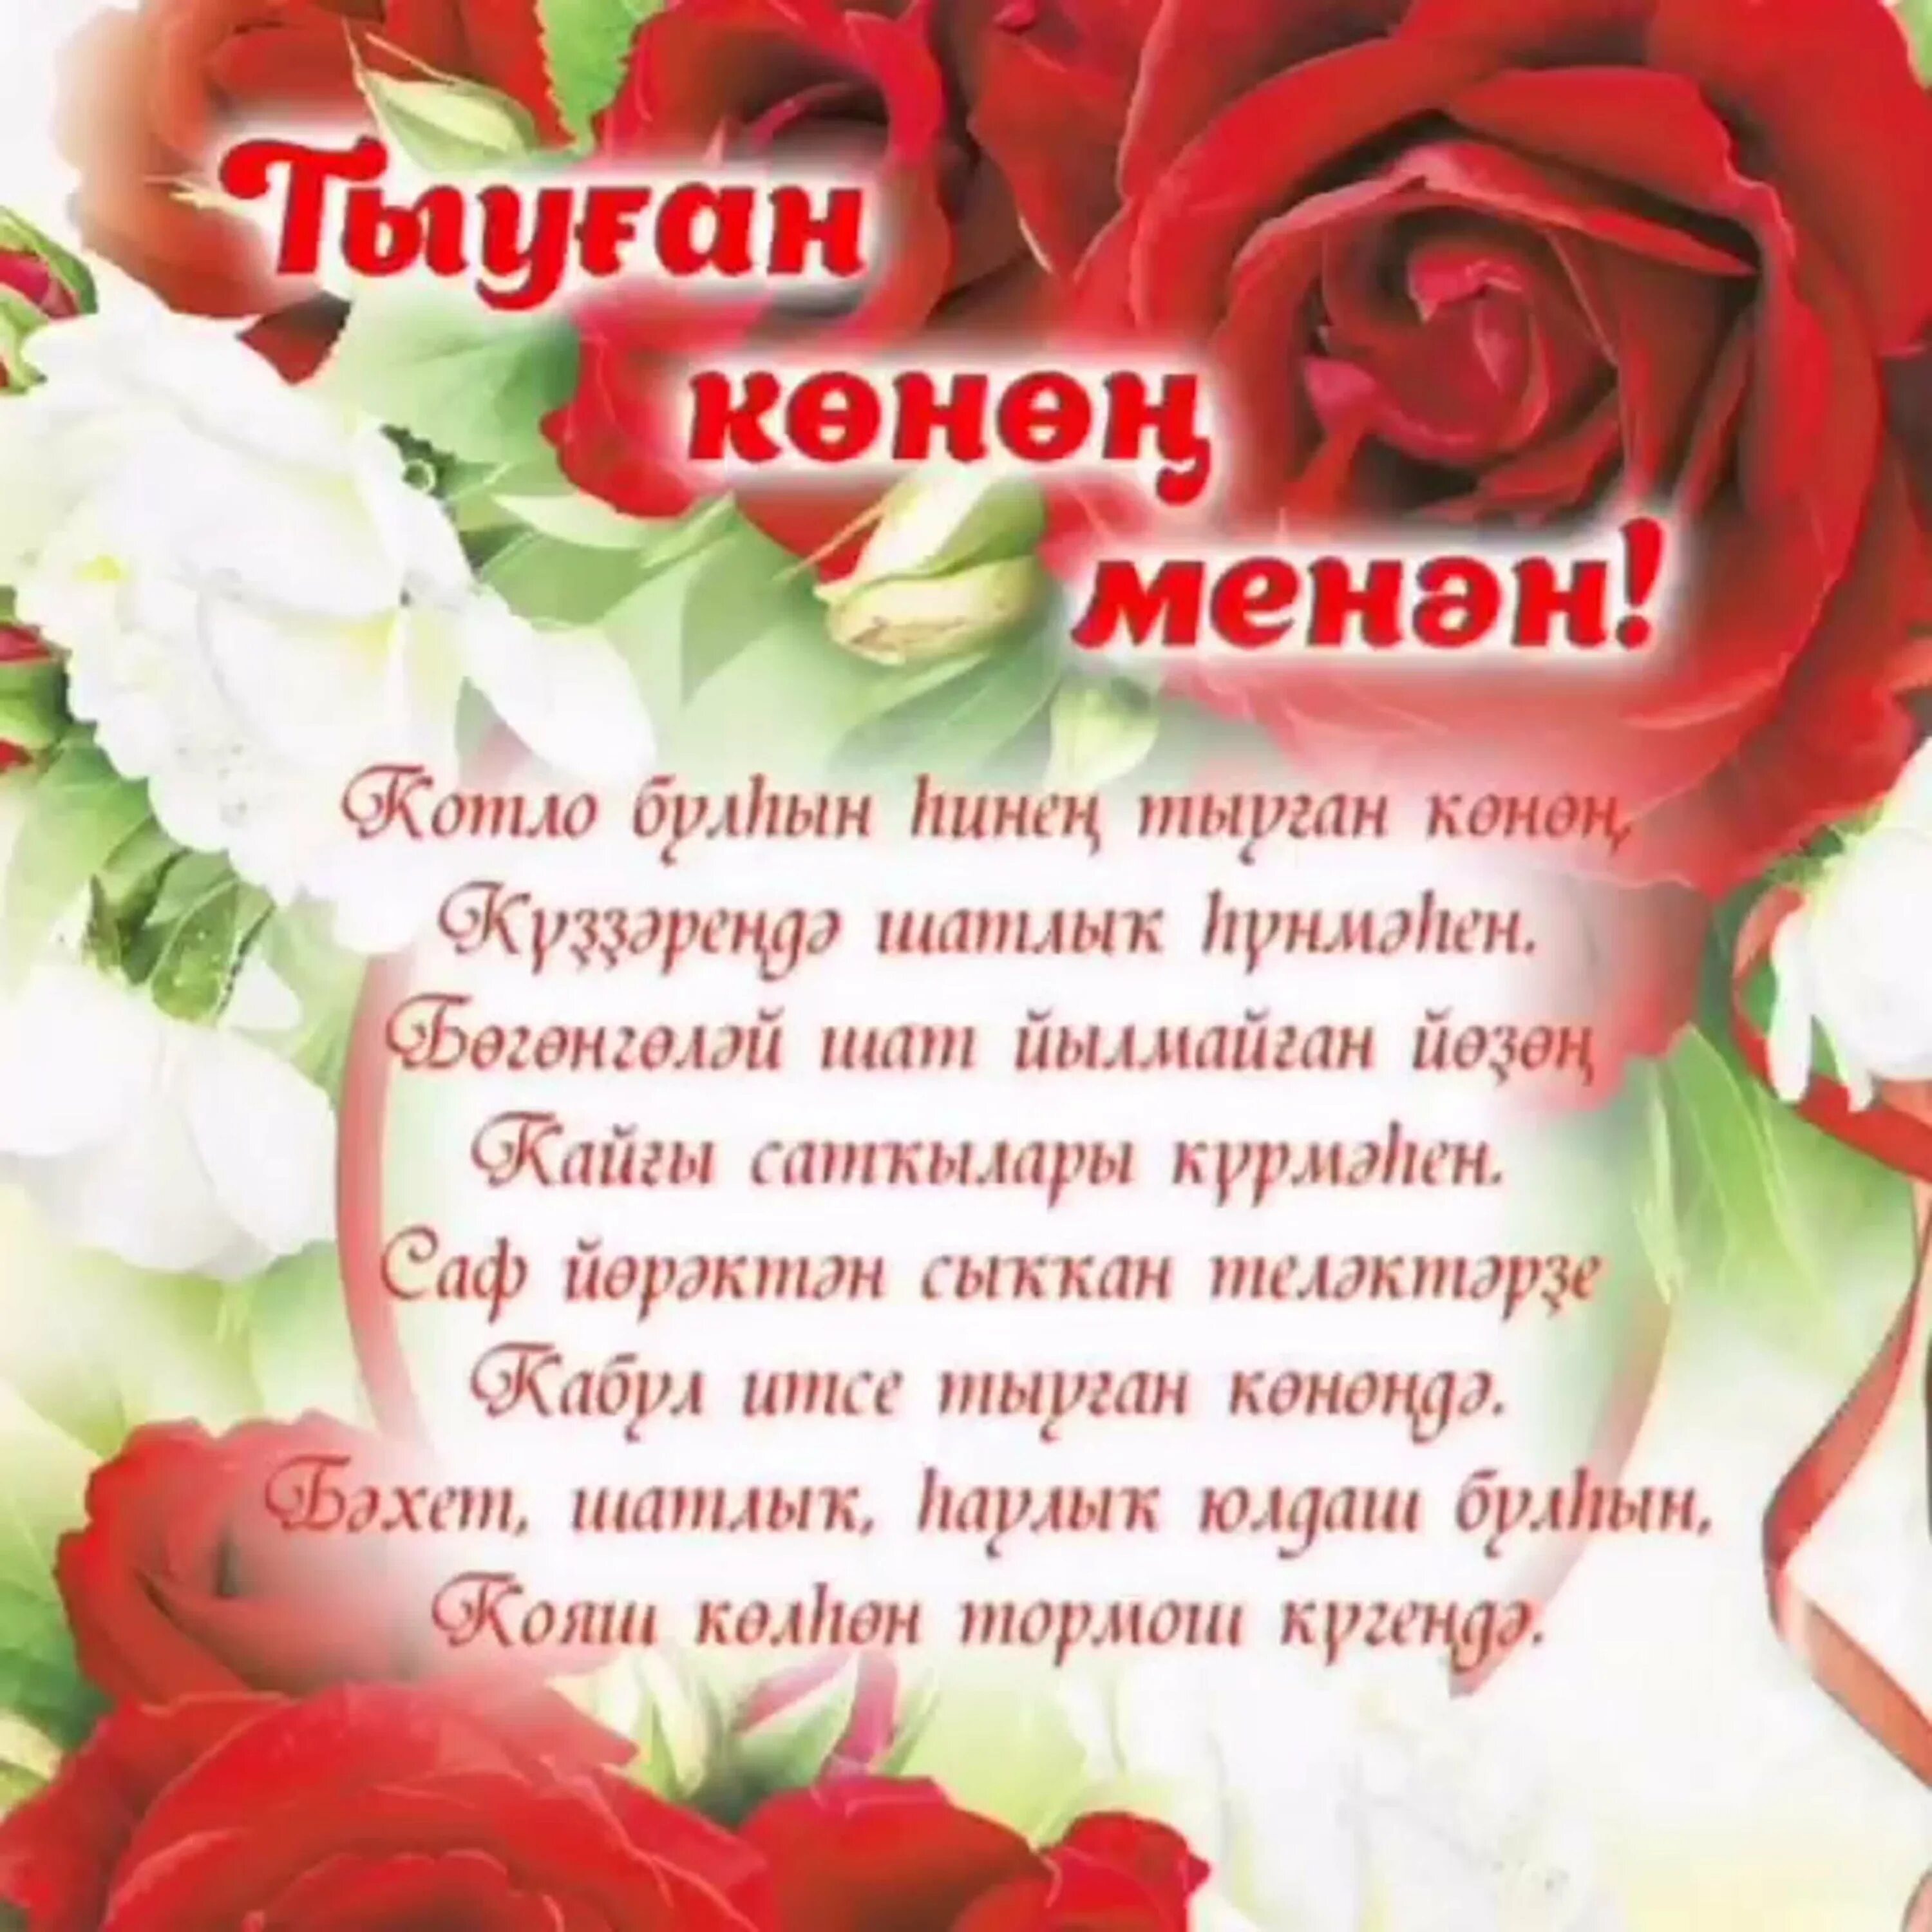 Туган конен перевод. Поздравления на башкирском языке. Поздравления с днём рождения на башкирском языке. Поздравление на татарском языке. Поздравления с днём рождения женщине на башкирском языке.